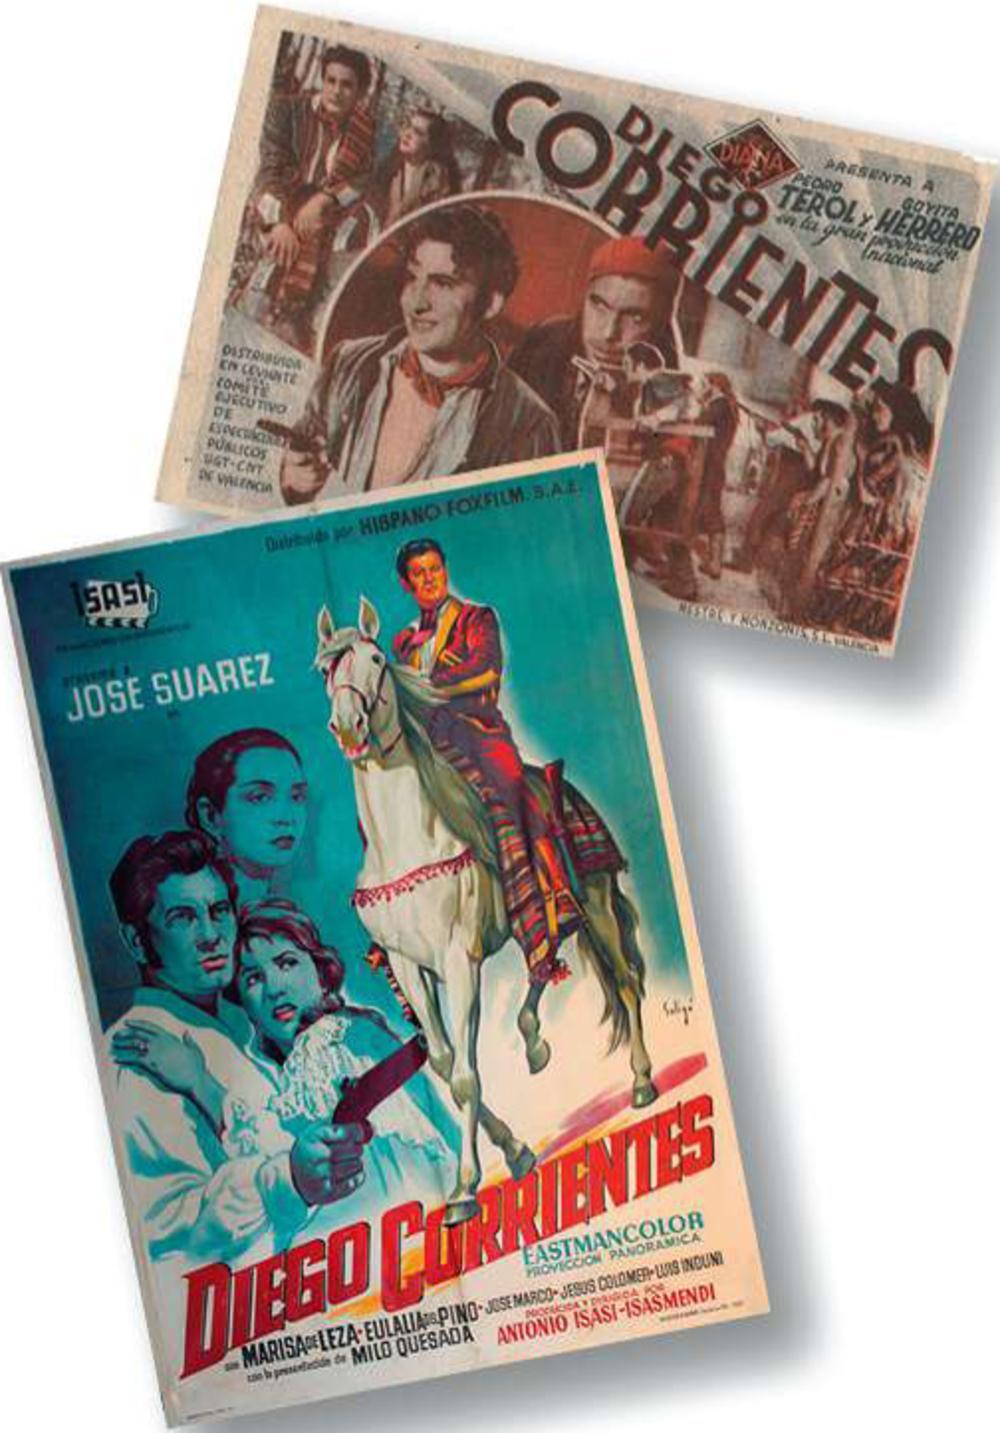 Dichters, theatermakers, schrijvers en zangers maakten van Diego Corrientes een figuur die steeds verder van de historische realiteit kwam te staan. Boven een foldertje dat in 1937 een film aankondigt met in de hoofdrollen Pedro Terol en Goyita Herrero. Daaronder een filmposter uit 1959, met hoofdrolspeler José Suárez.